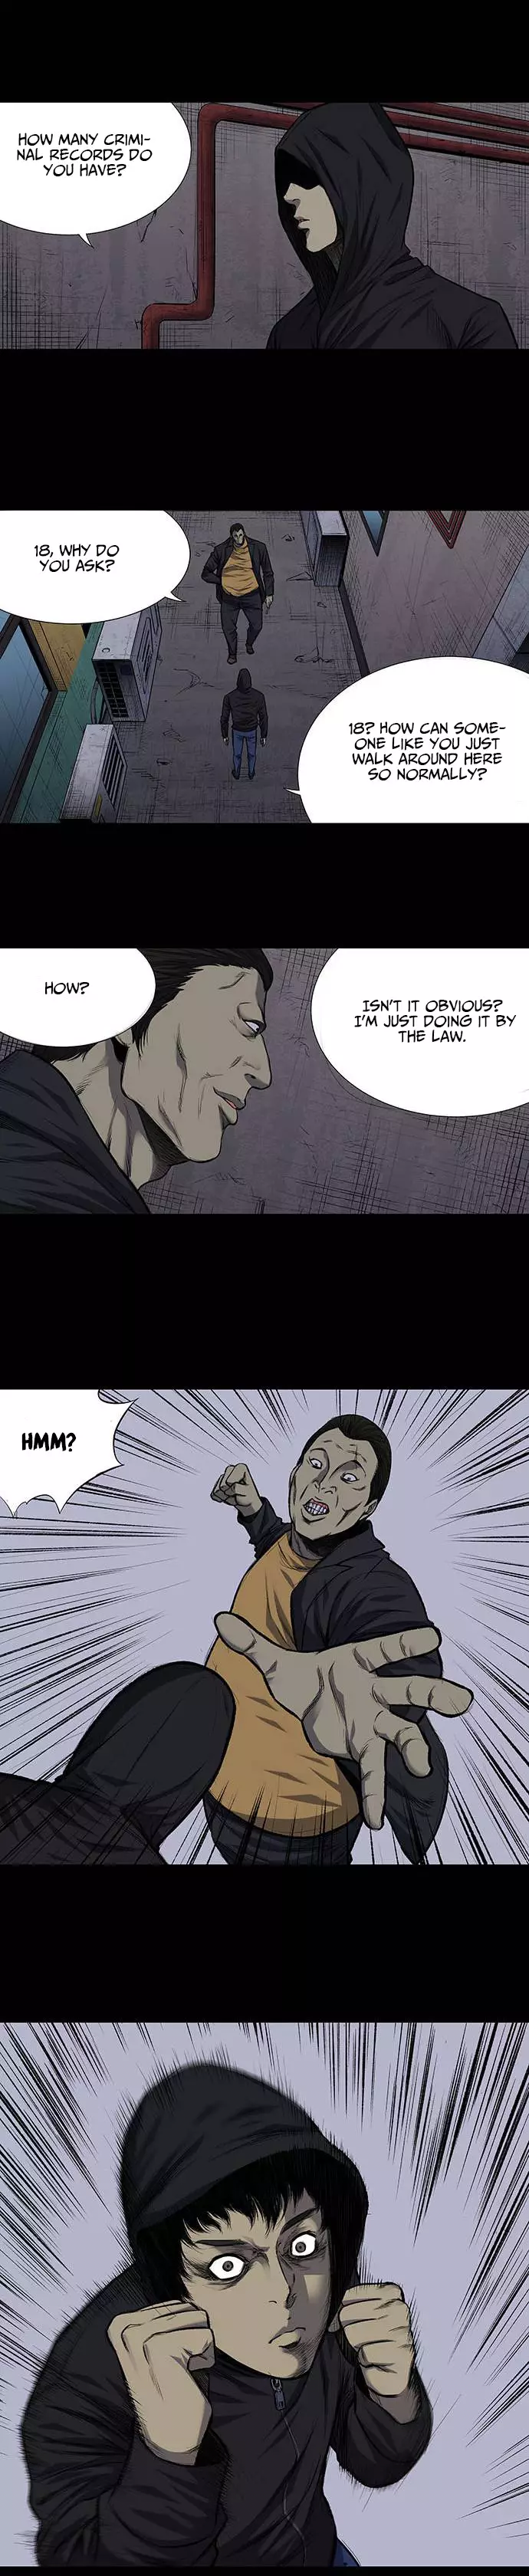 Vigilante - 1 page 9